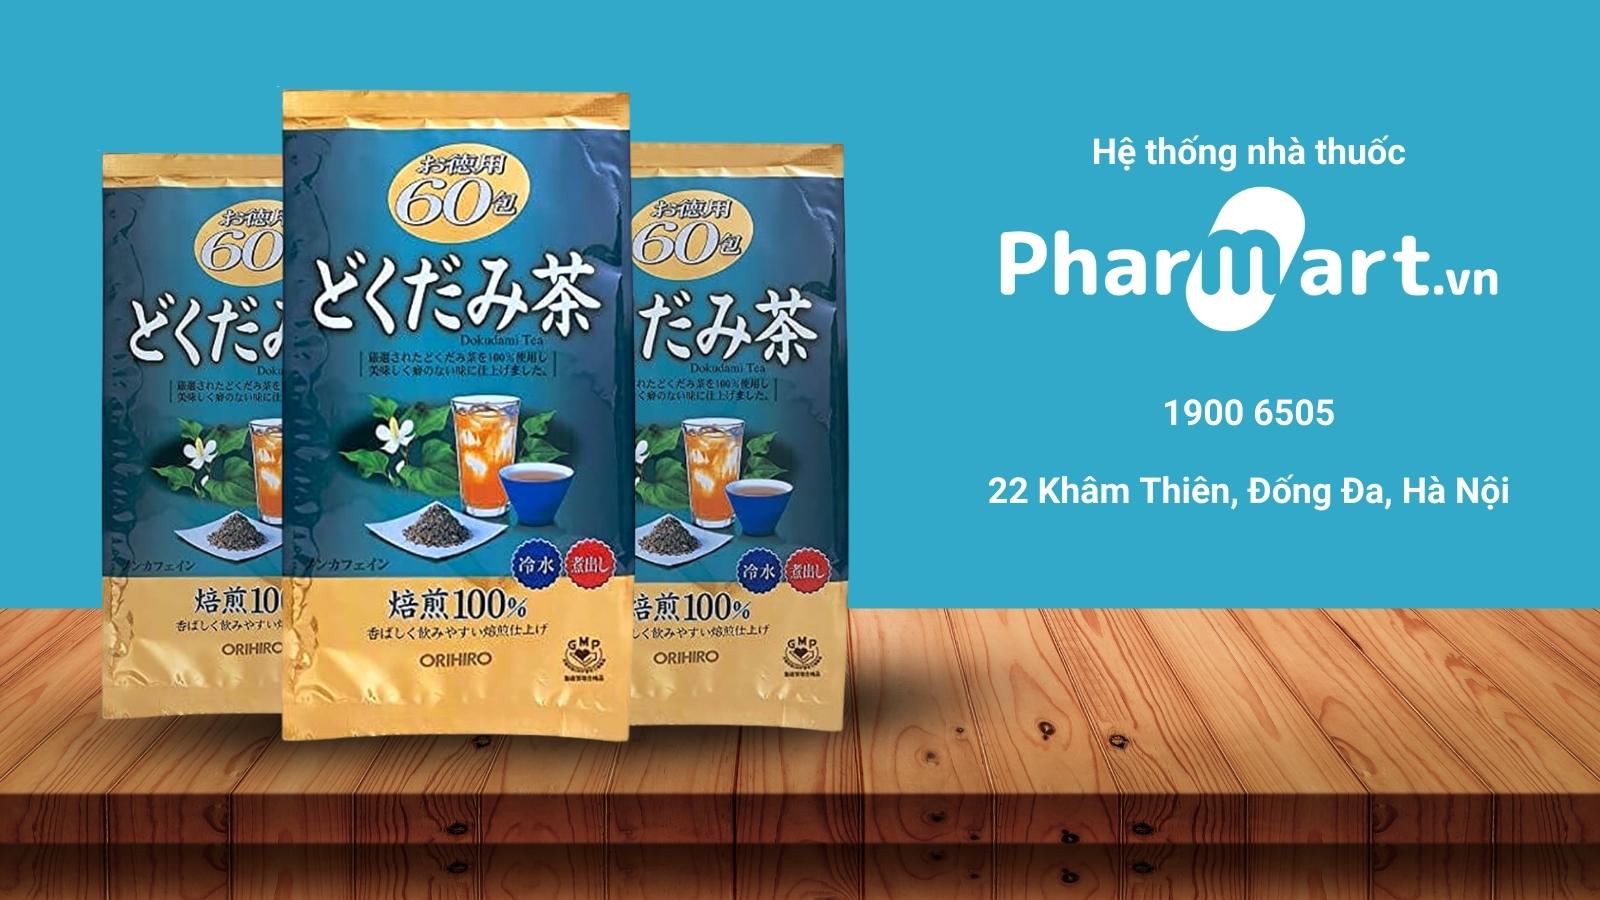 Pharmart.vn cam kết phân phối trà Orihiro chính hãng